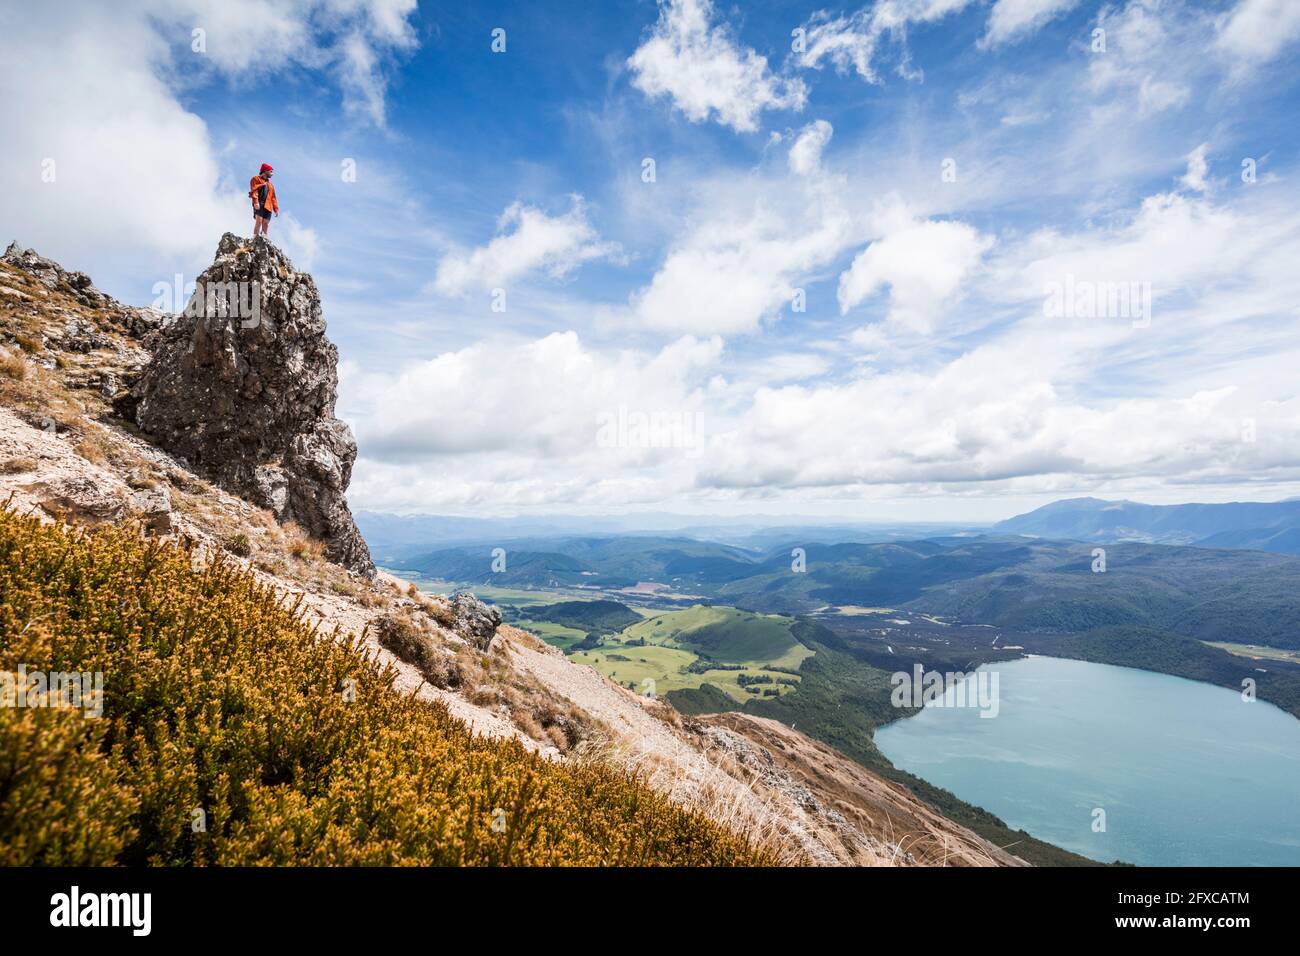 Neuseeland, Tasman District, männlicher Wanderer, der auf einer Felsformation mit Blick auf den scenicÂ Lake Rotoiti steht Stockfoto